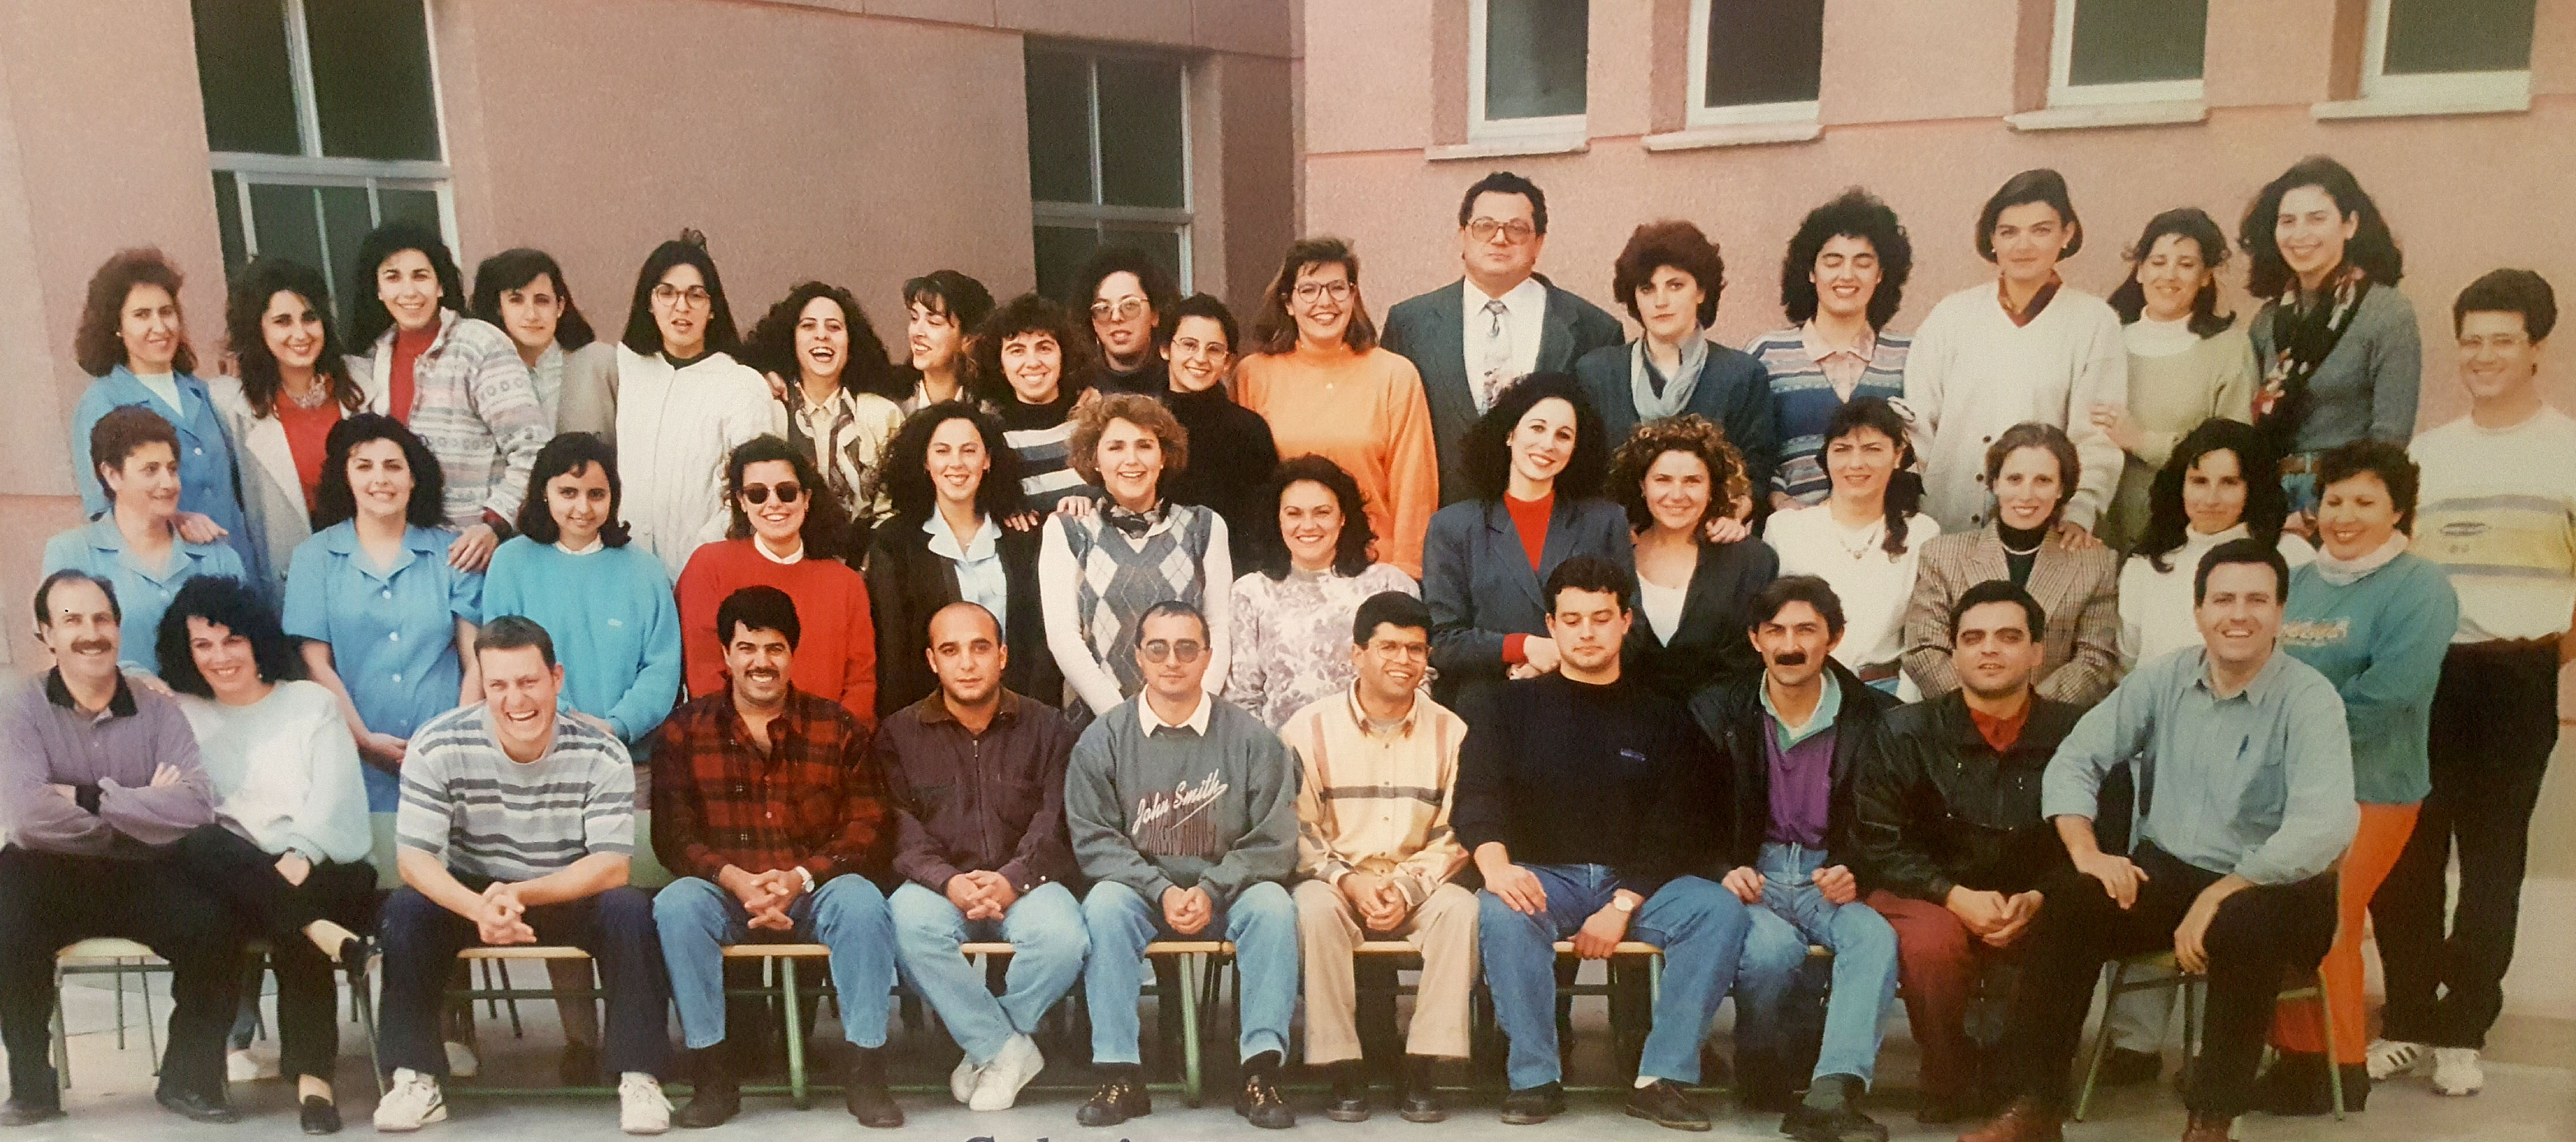 25 Aniversario del Colegio Echeyde III